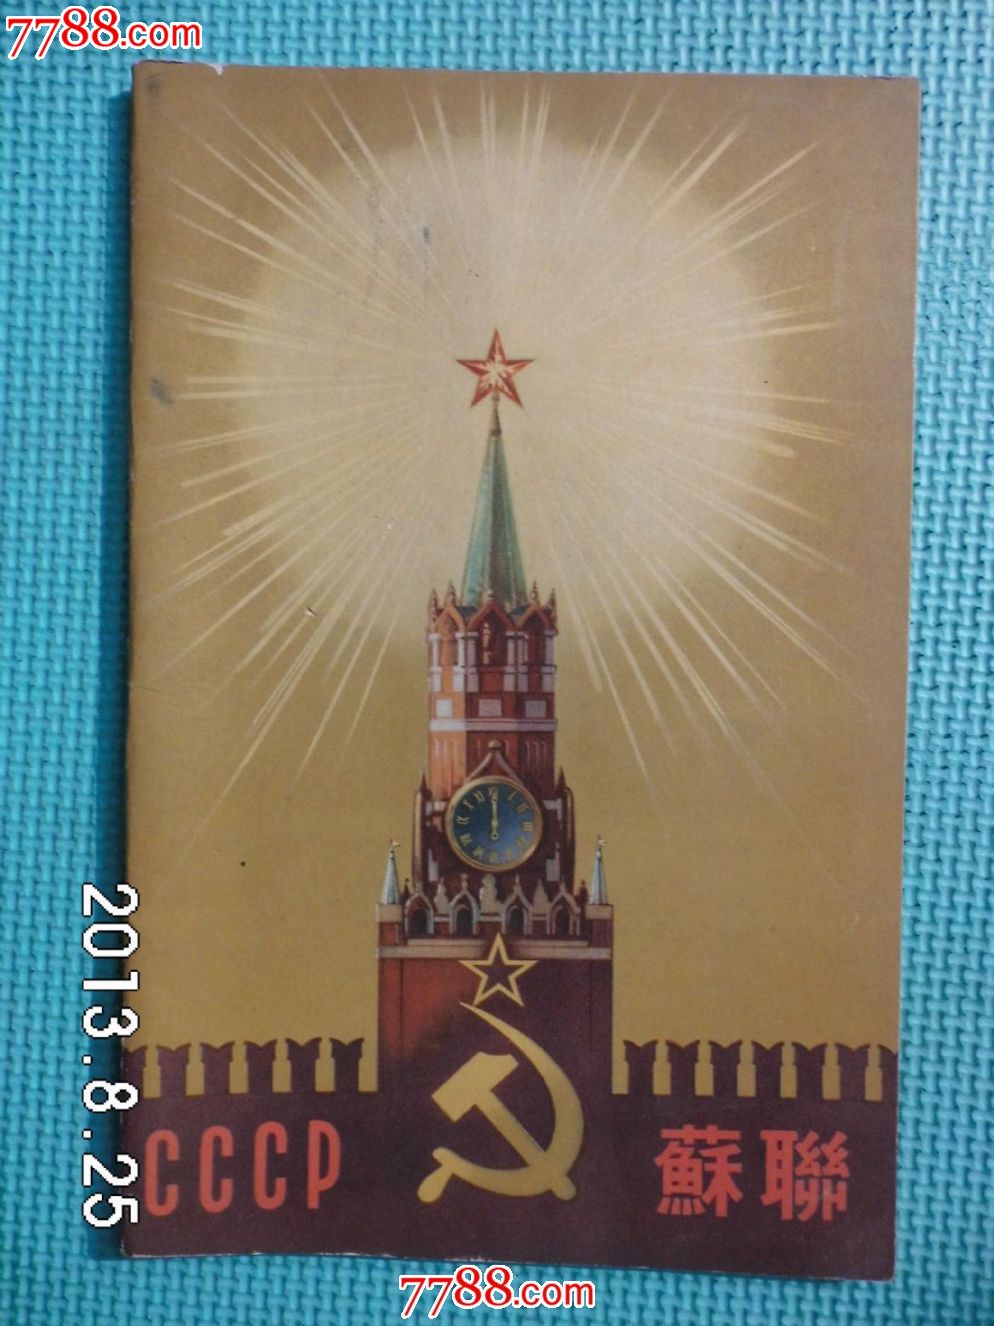 苏维埃社会主义共和国联盟-价格:45元-se1933